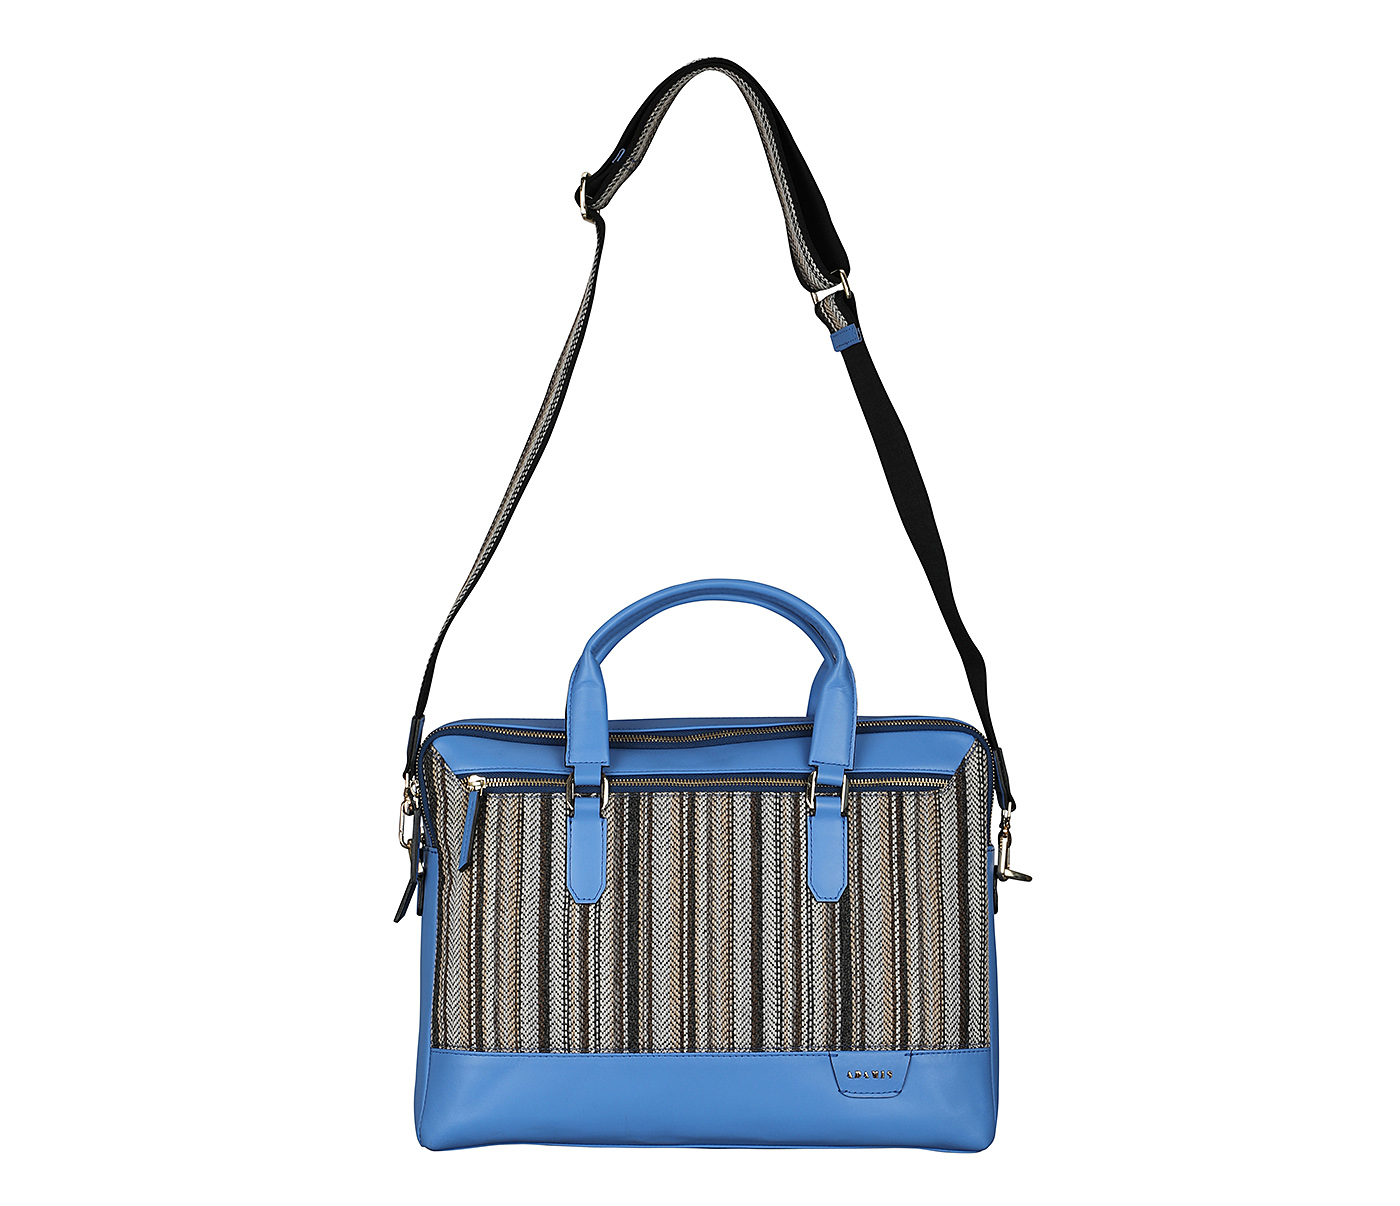 F79-Alvaro-Laptop cum portfolio bag in Multi colored Stripes print fabric with Genuine Leather combination - LT BLUE